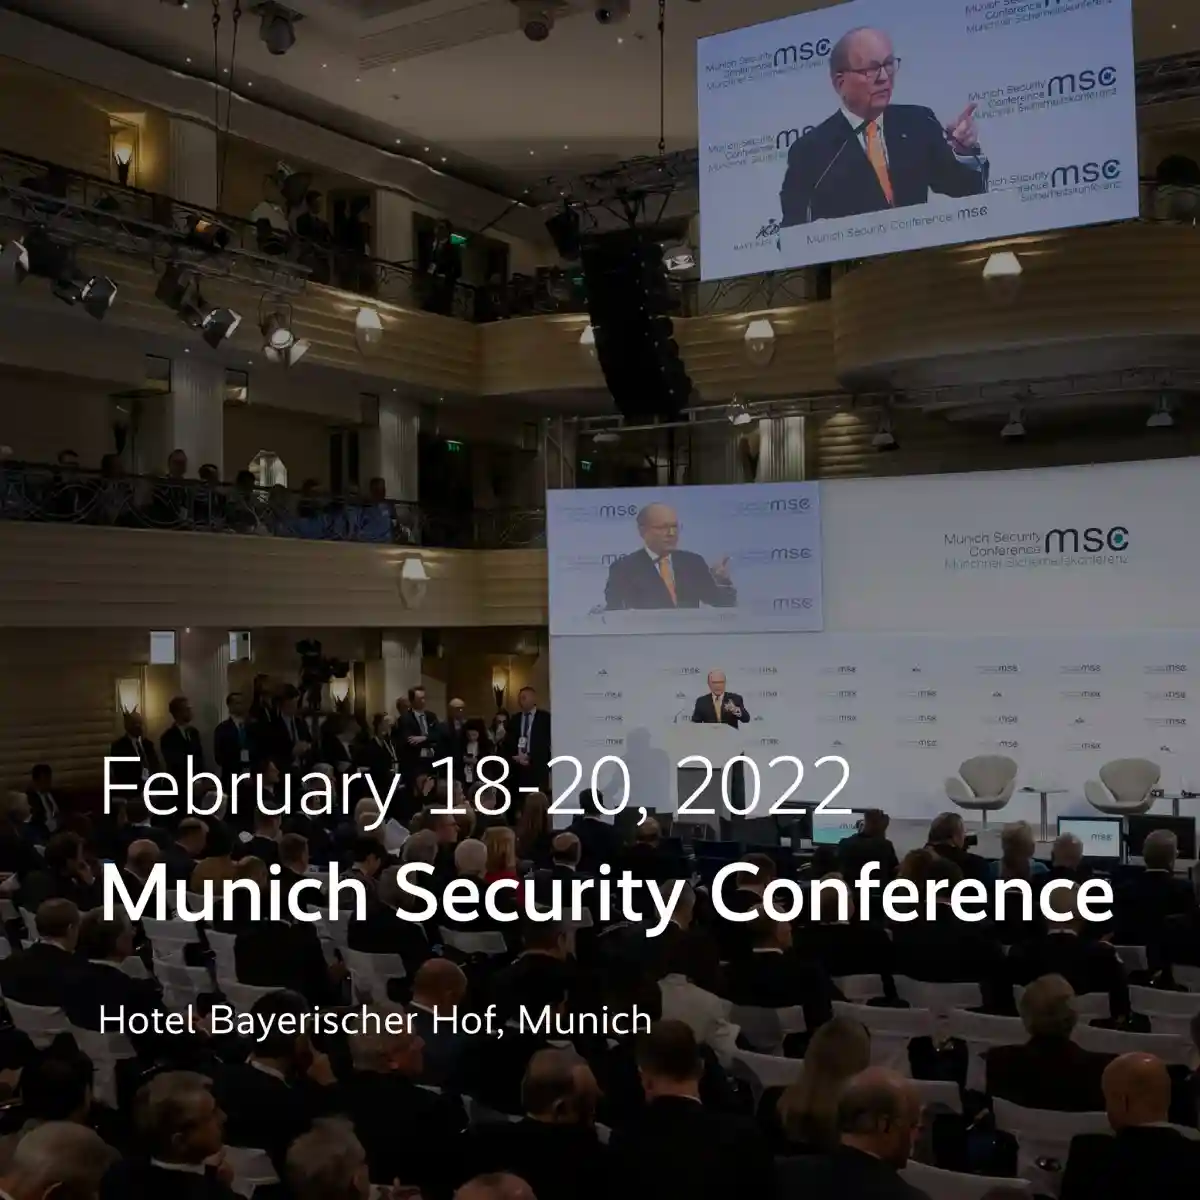 В 2022 году Мюнхенская конференция по безопасности состоится с 18 по 20 февраля 2022 года в обычном месте, в отеле Bayerischer Hof в Мюнхене. Фото: MunSecConf / Facebook.com